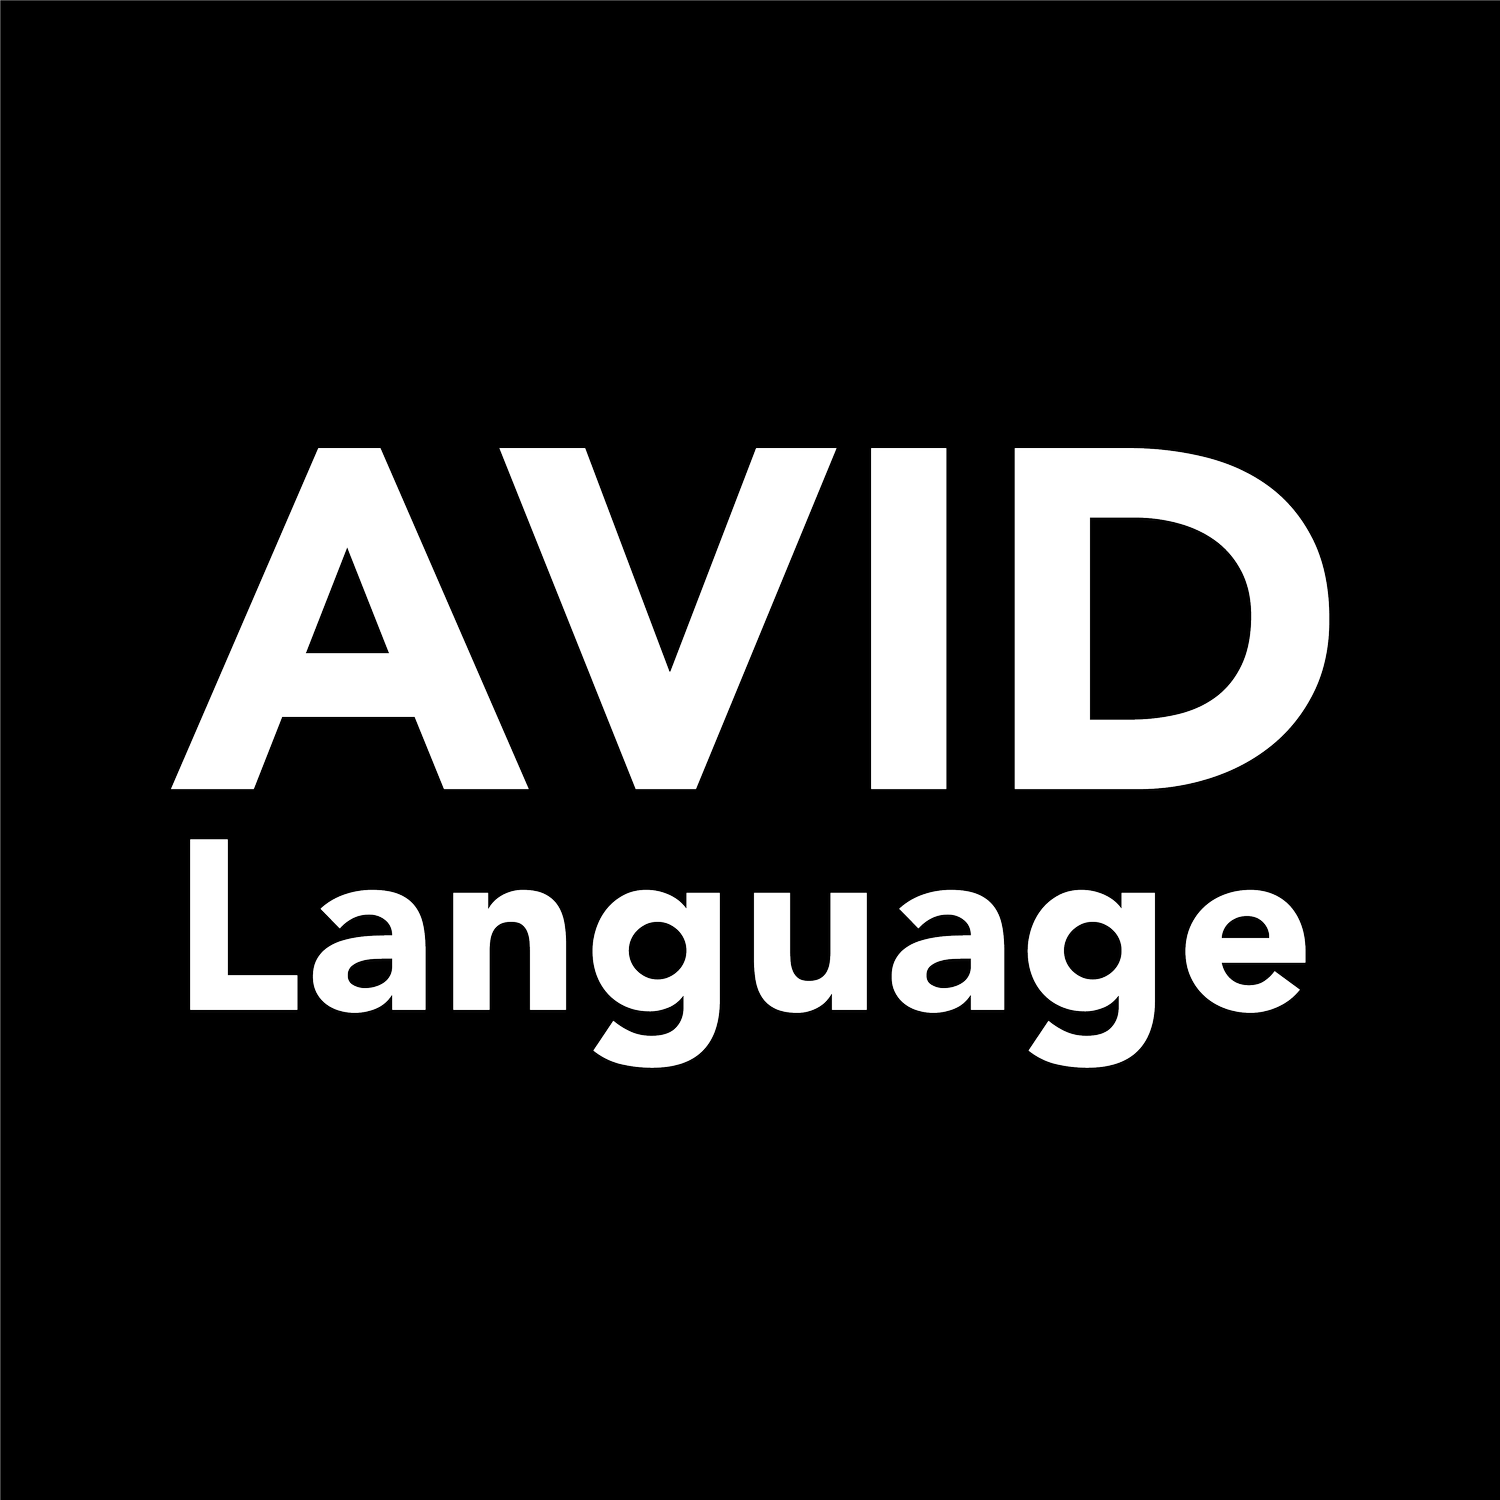 AVID Language en español